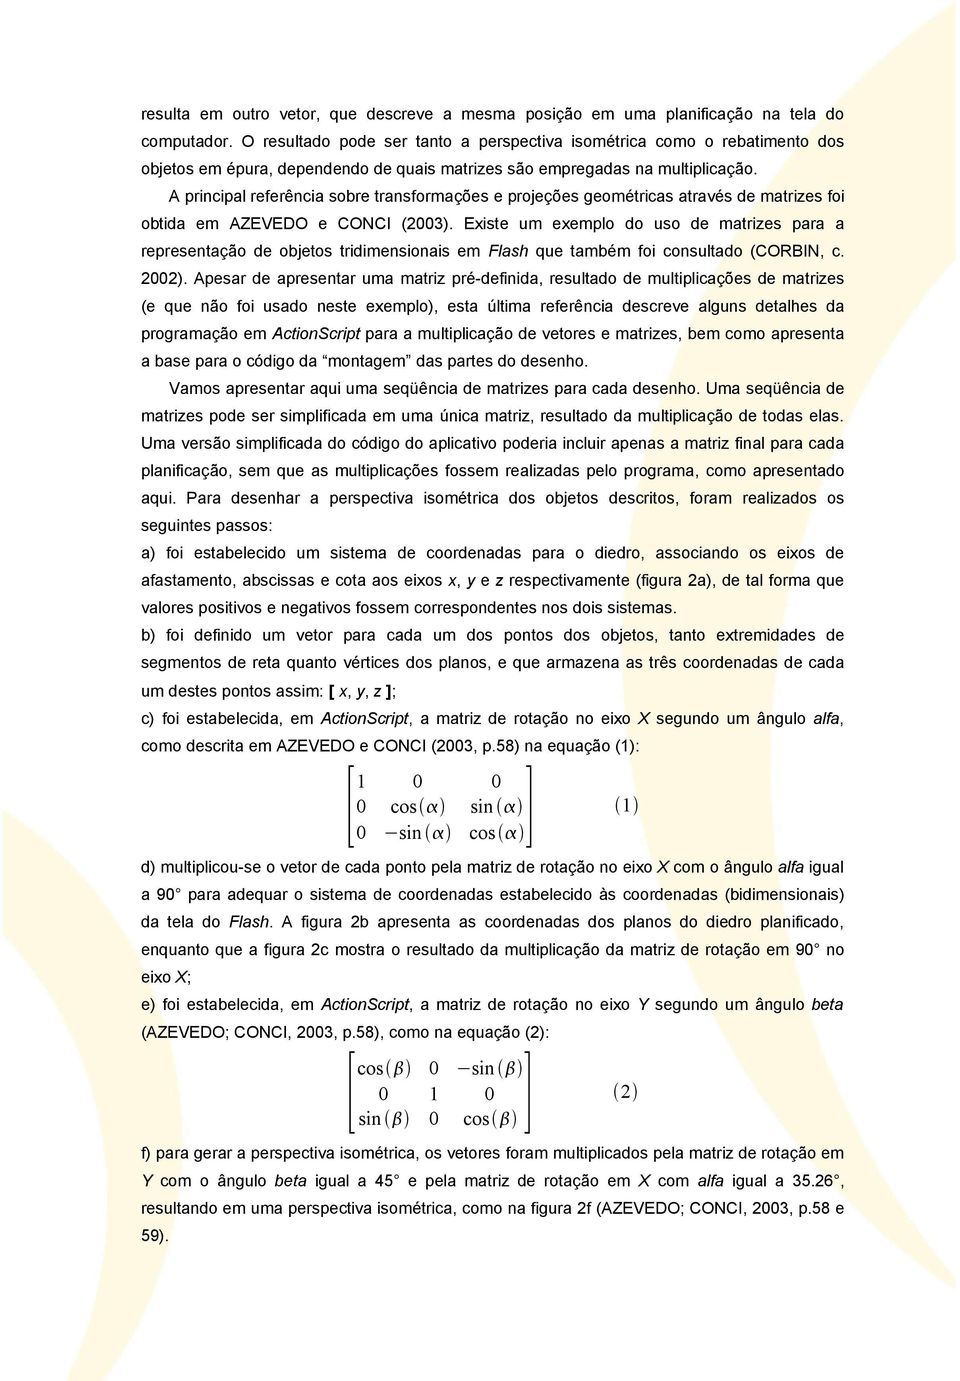 A principal referência sobre transformações e projeções geométricas através de matrizes foi obtida em AZEVEDO e CONCI (2003).